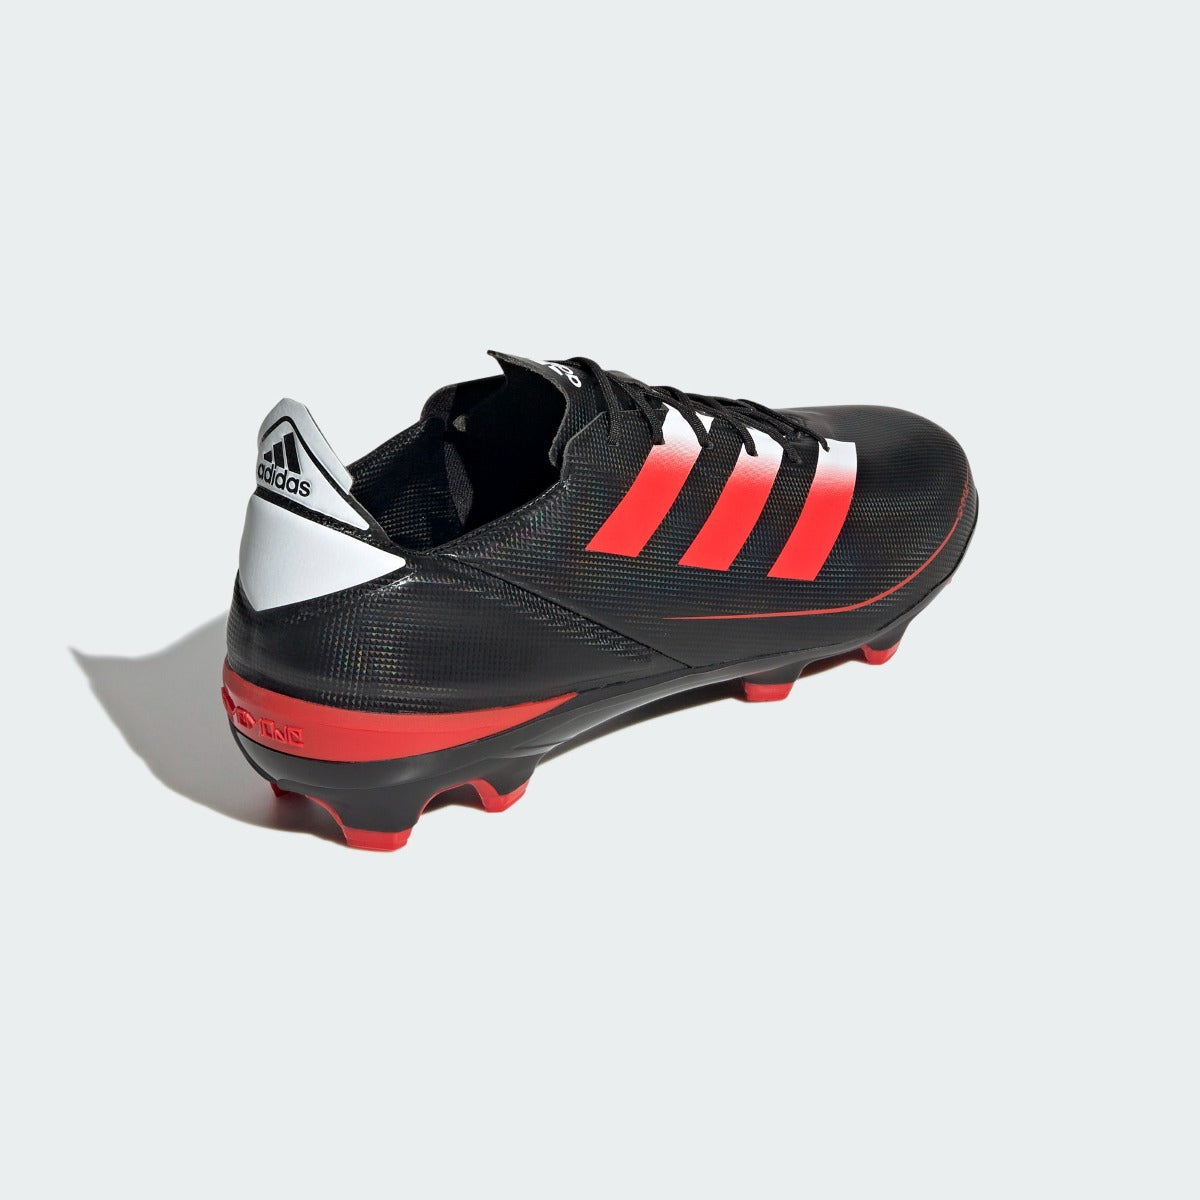 Adidas GameMode FG - Black-Red (Diagonal 2)